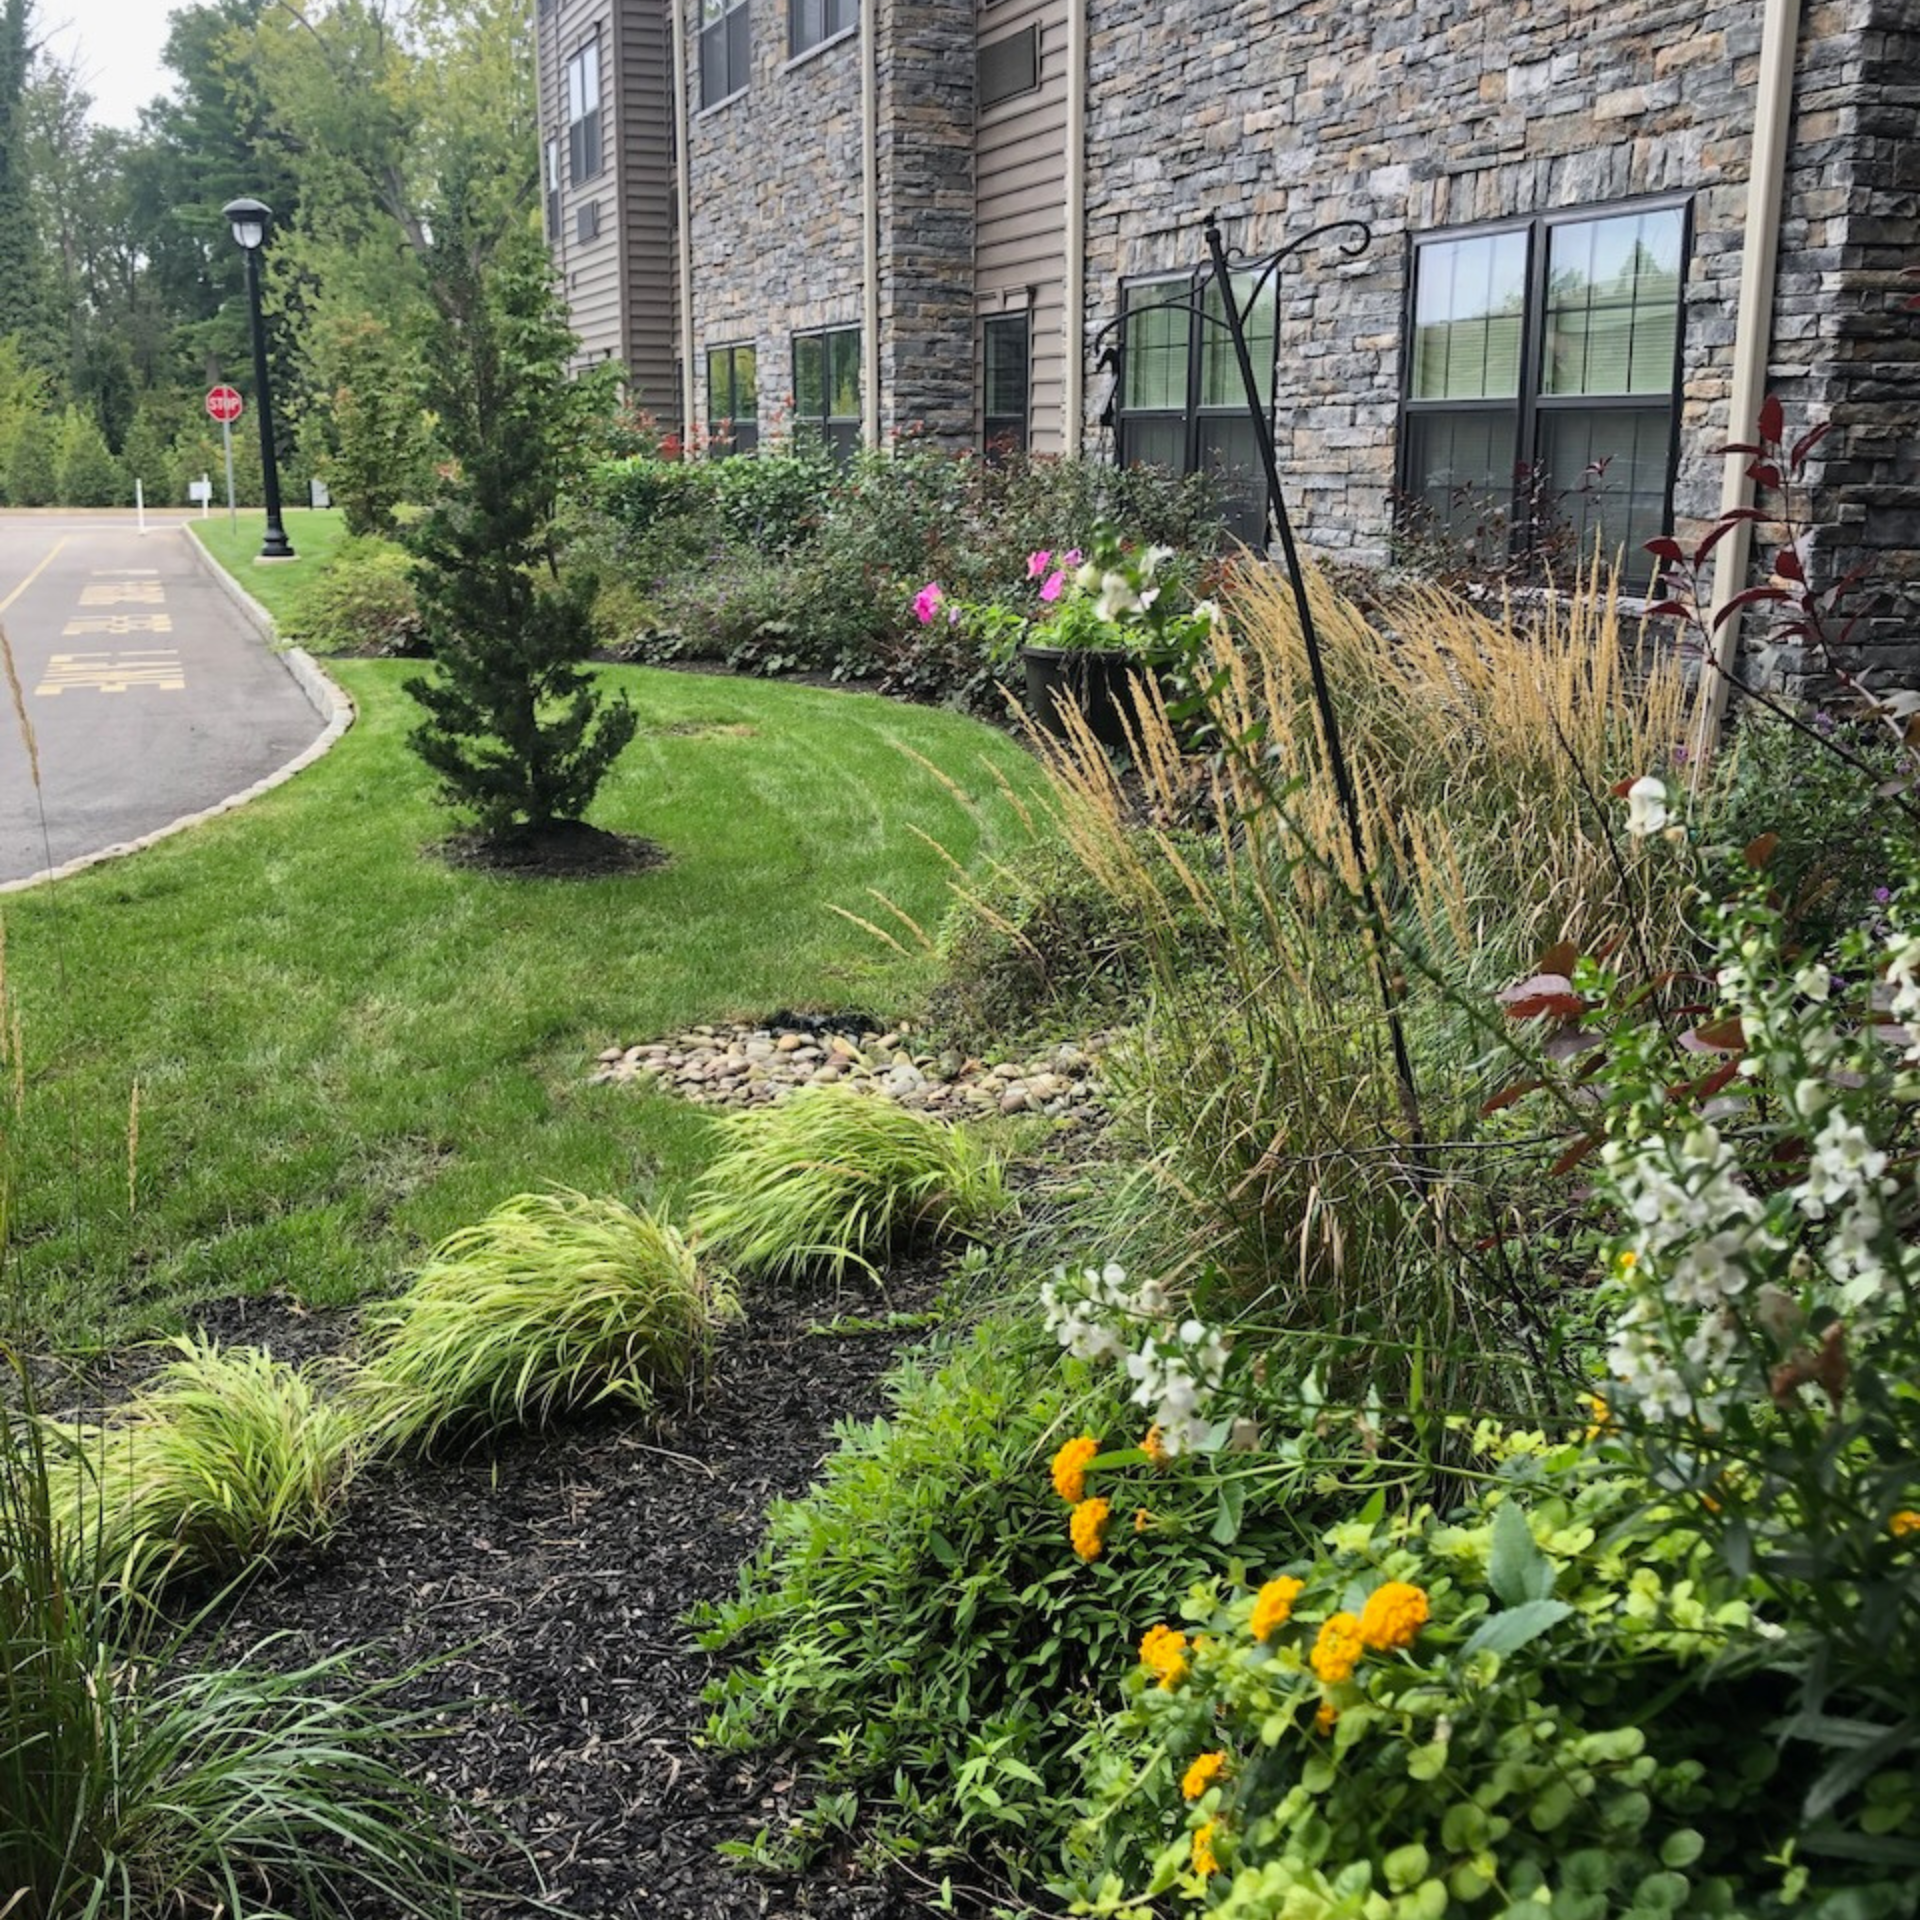 Malvern, PA Commercial Lawn Care & Landscape Maintenance